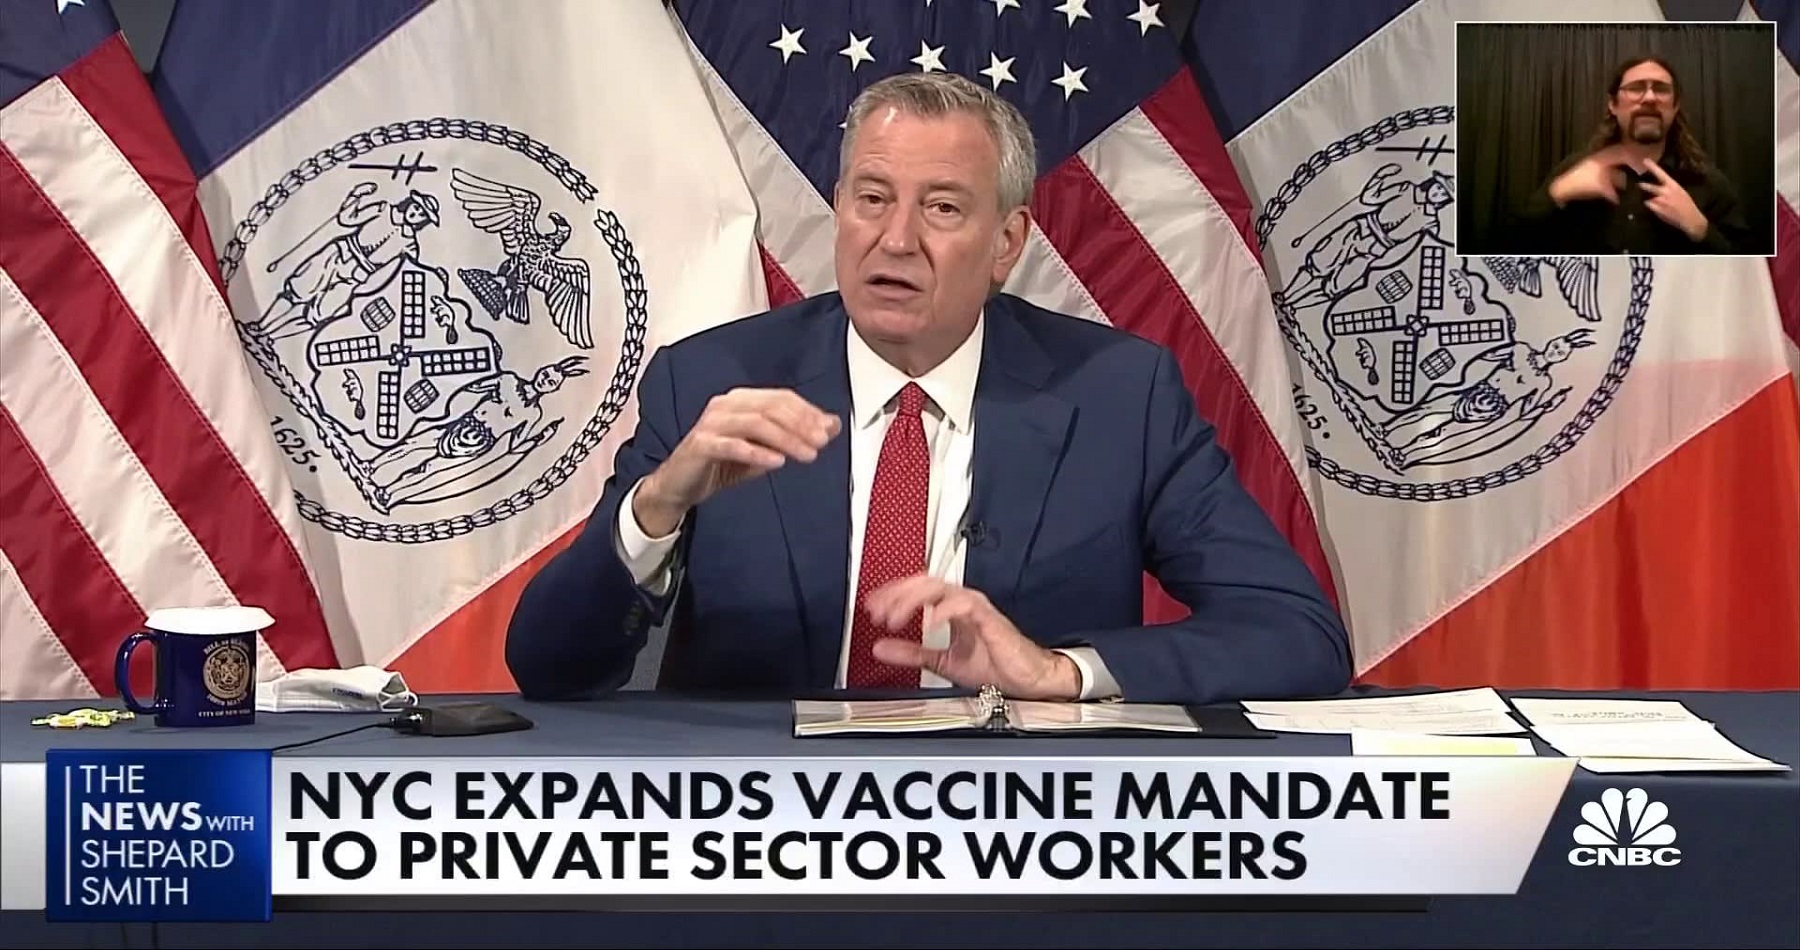 Η Πόλη της Νέας Υόρκης: Ανακοινώνει την εντολή εμβολιασμού covid-19 για τους εργοδότες του ιδιωτικού τομέα